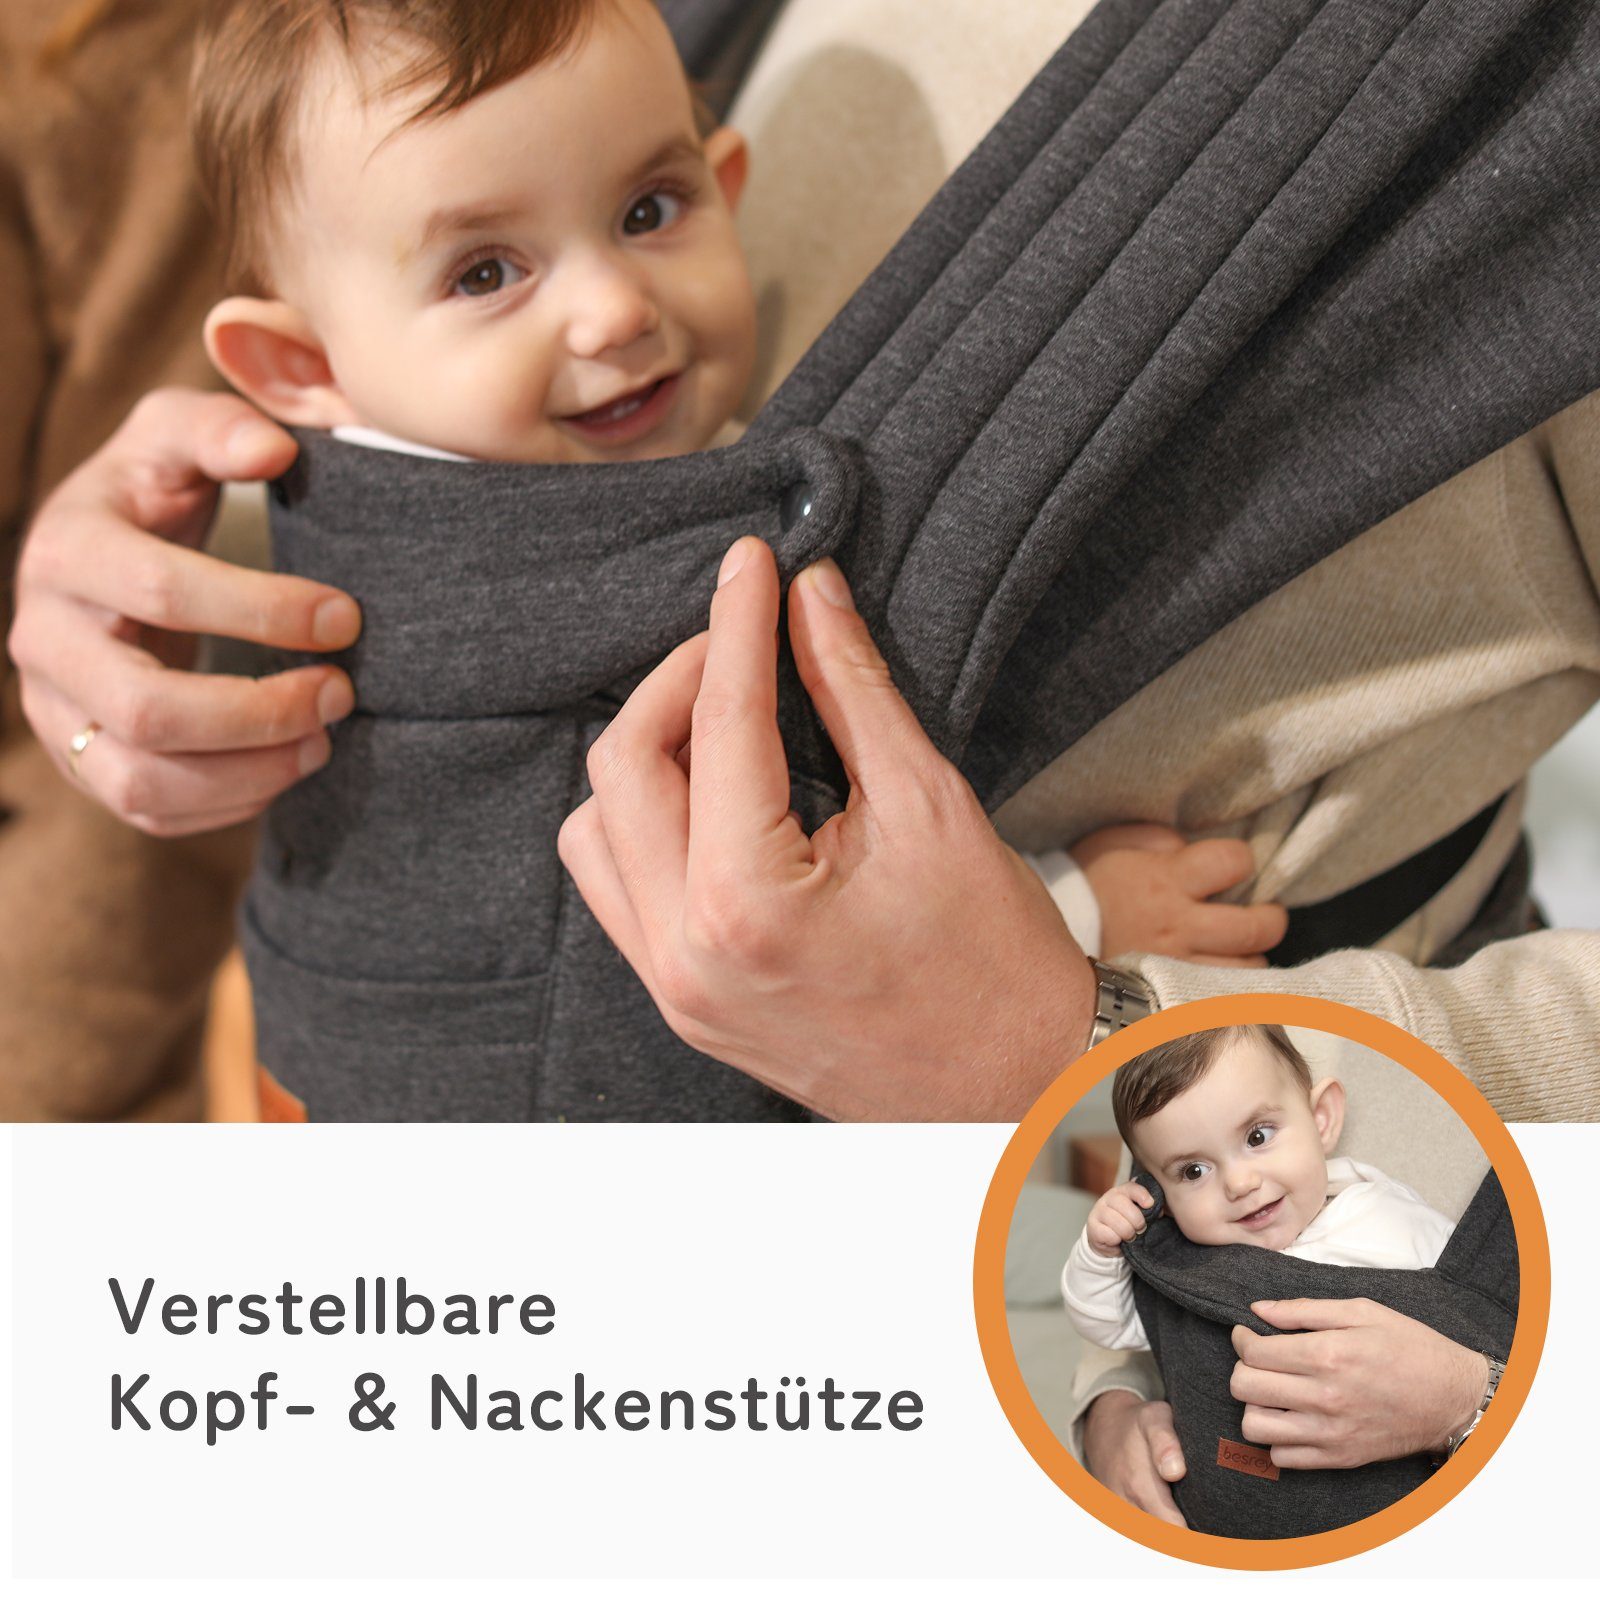 besrey Babytrage babytrage Träger Komfort Bauchtrage Kleinkinder Wrap 11kg, für & Winter zu Babys bis